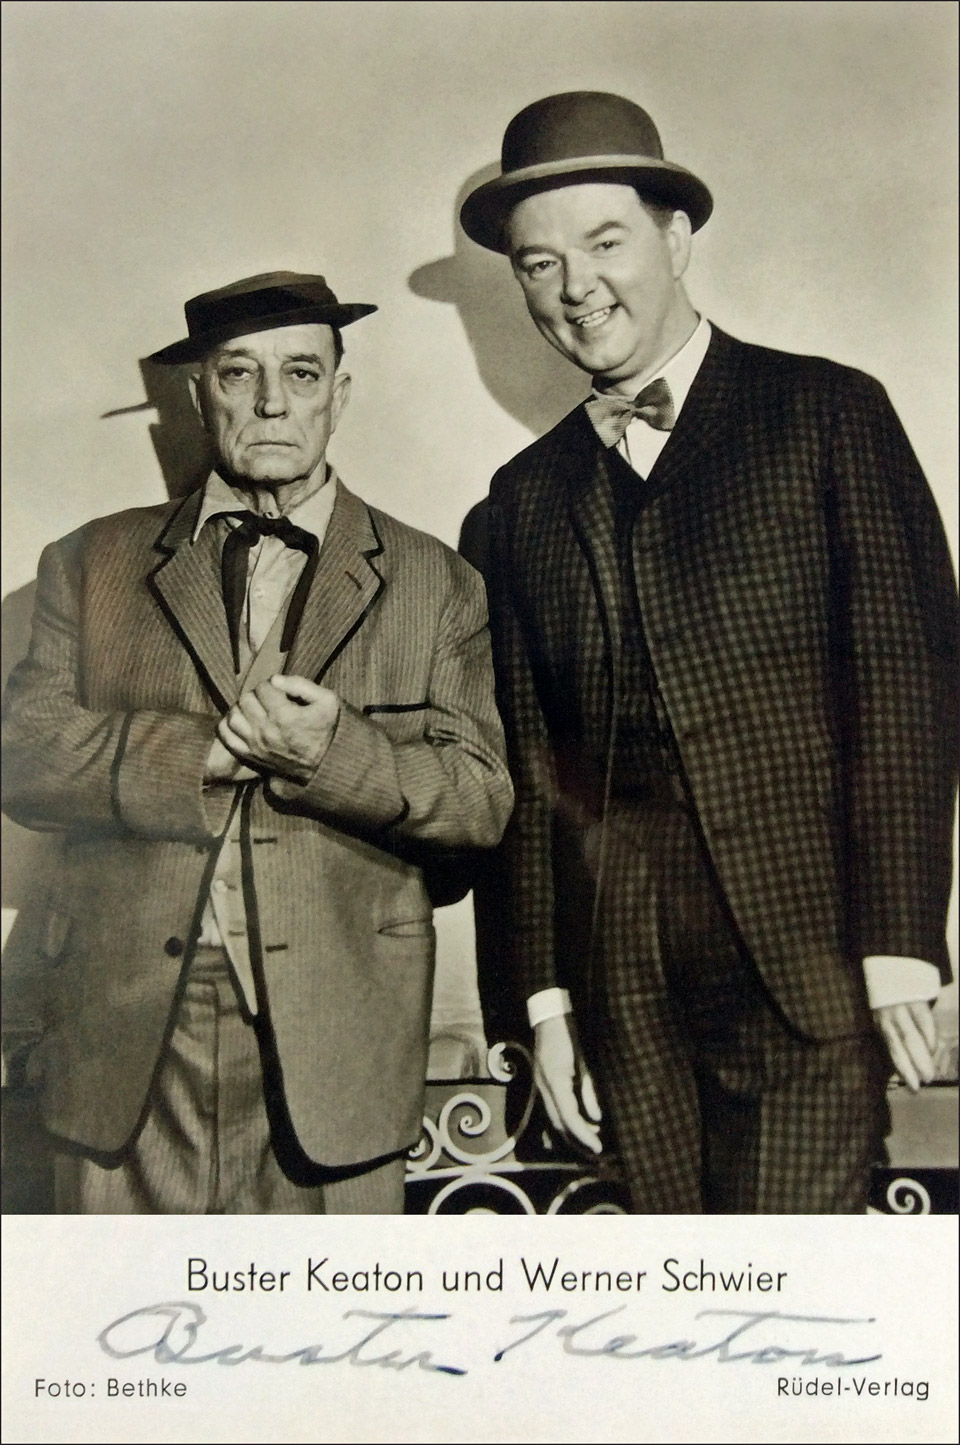 Autogrammkarte mit Unterschrift von Buster Keaton und einem Foto von ihm zusammen mit Werner Schwier, Foto: Bethke, Rüdel-Verlag